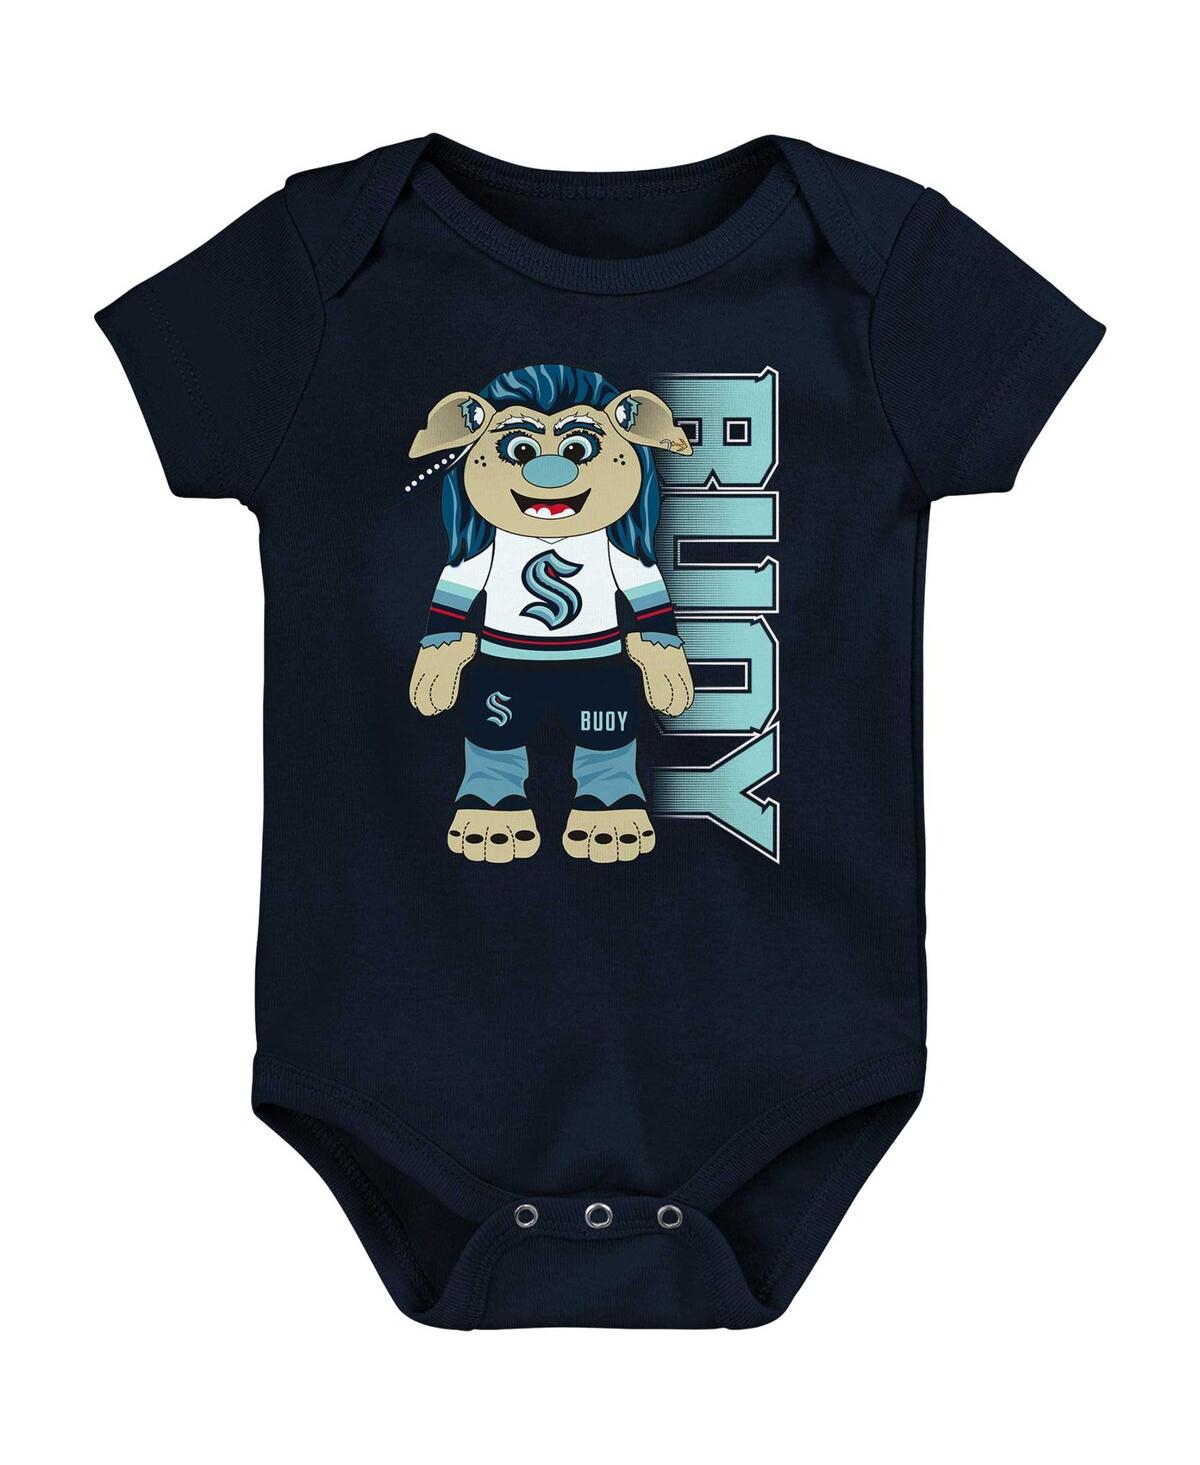 Outerstuff Babies' Newborn And Infant Boys And Girls Deep Sea Blue Seattle Kraken Mascot Cheer Bodysuit